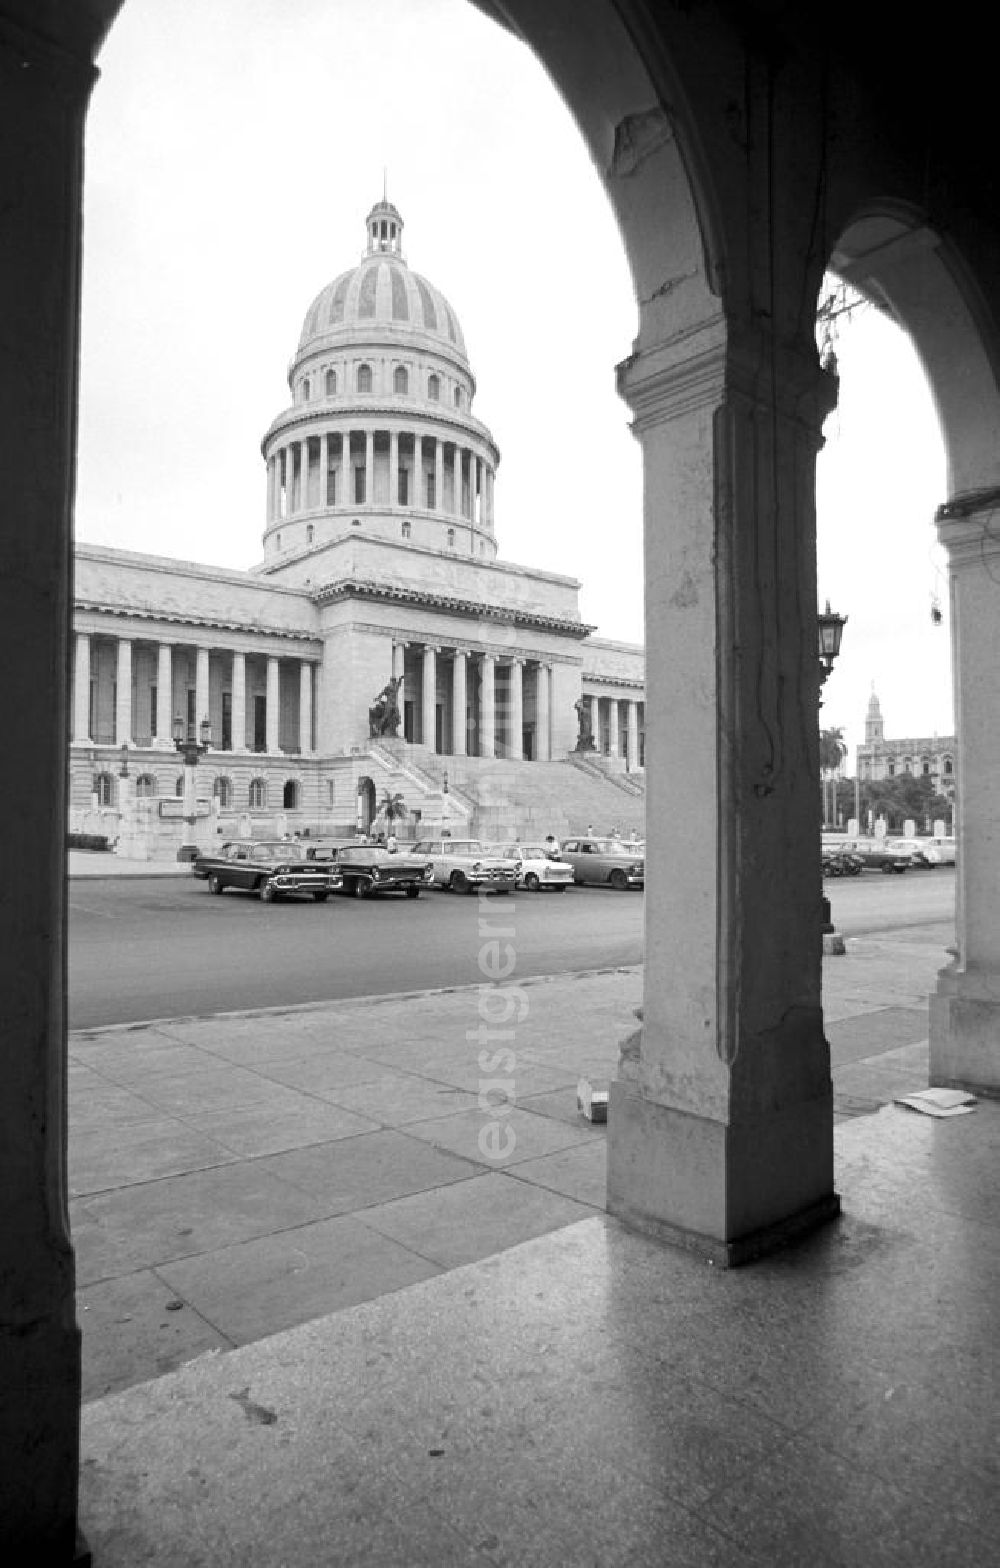 Havanna: Am Paseo de Martí - Blick auf das Kapitol in der kubanischen Hauptstadt Havanna. Ursprünglich als Regierungssitz für den kubanischen Präsidenten gebaut, wird das Gebäude seit 1959 als öffentlich zugängliches Kongresszentrum genutzt.